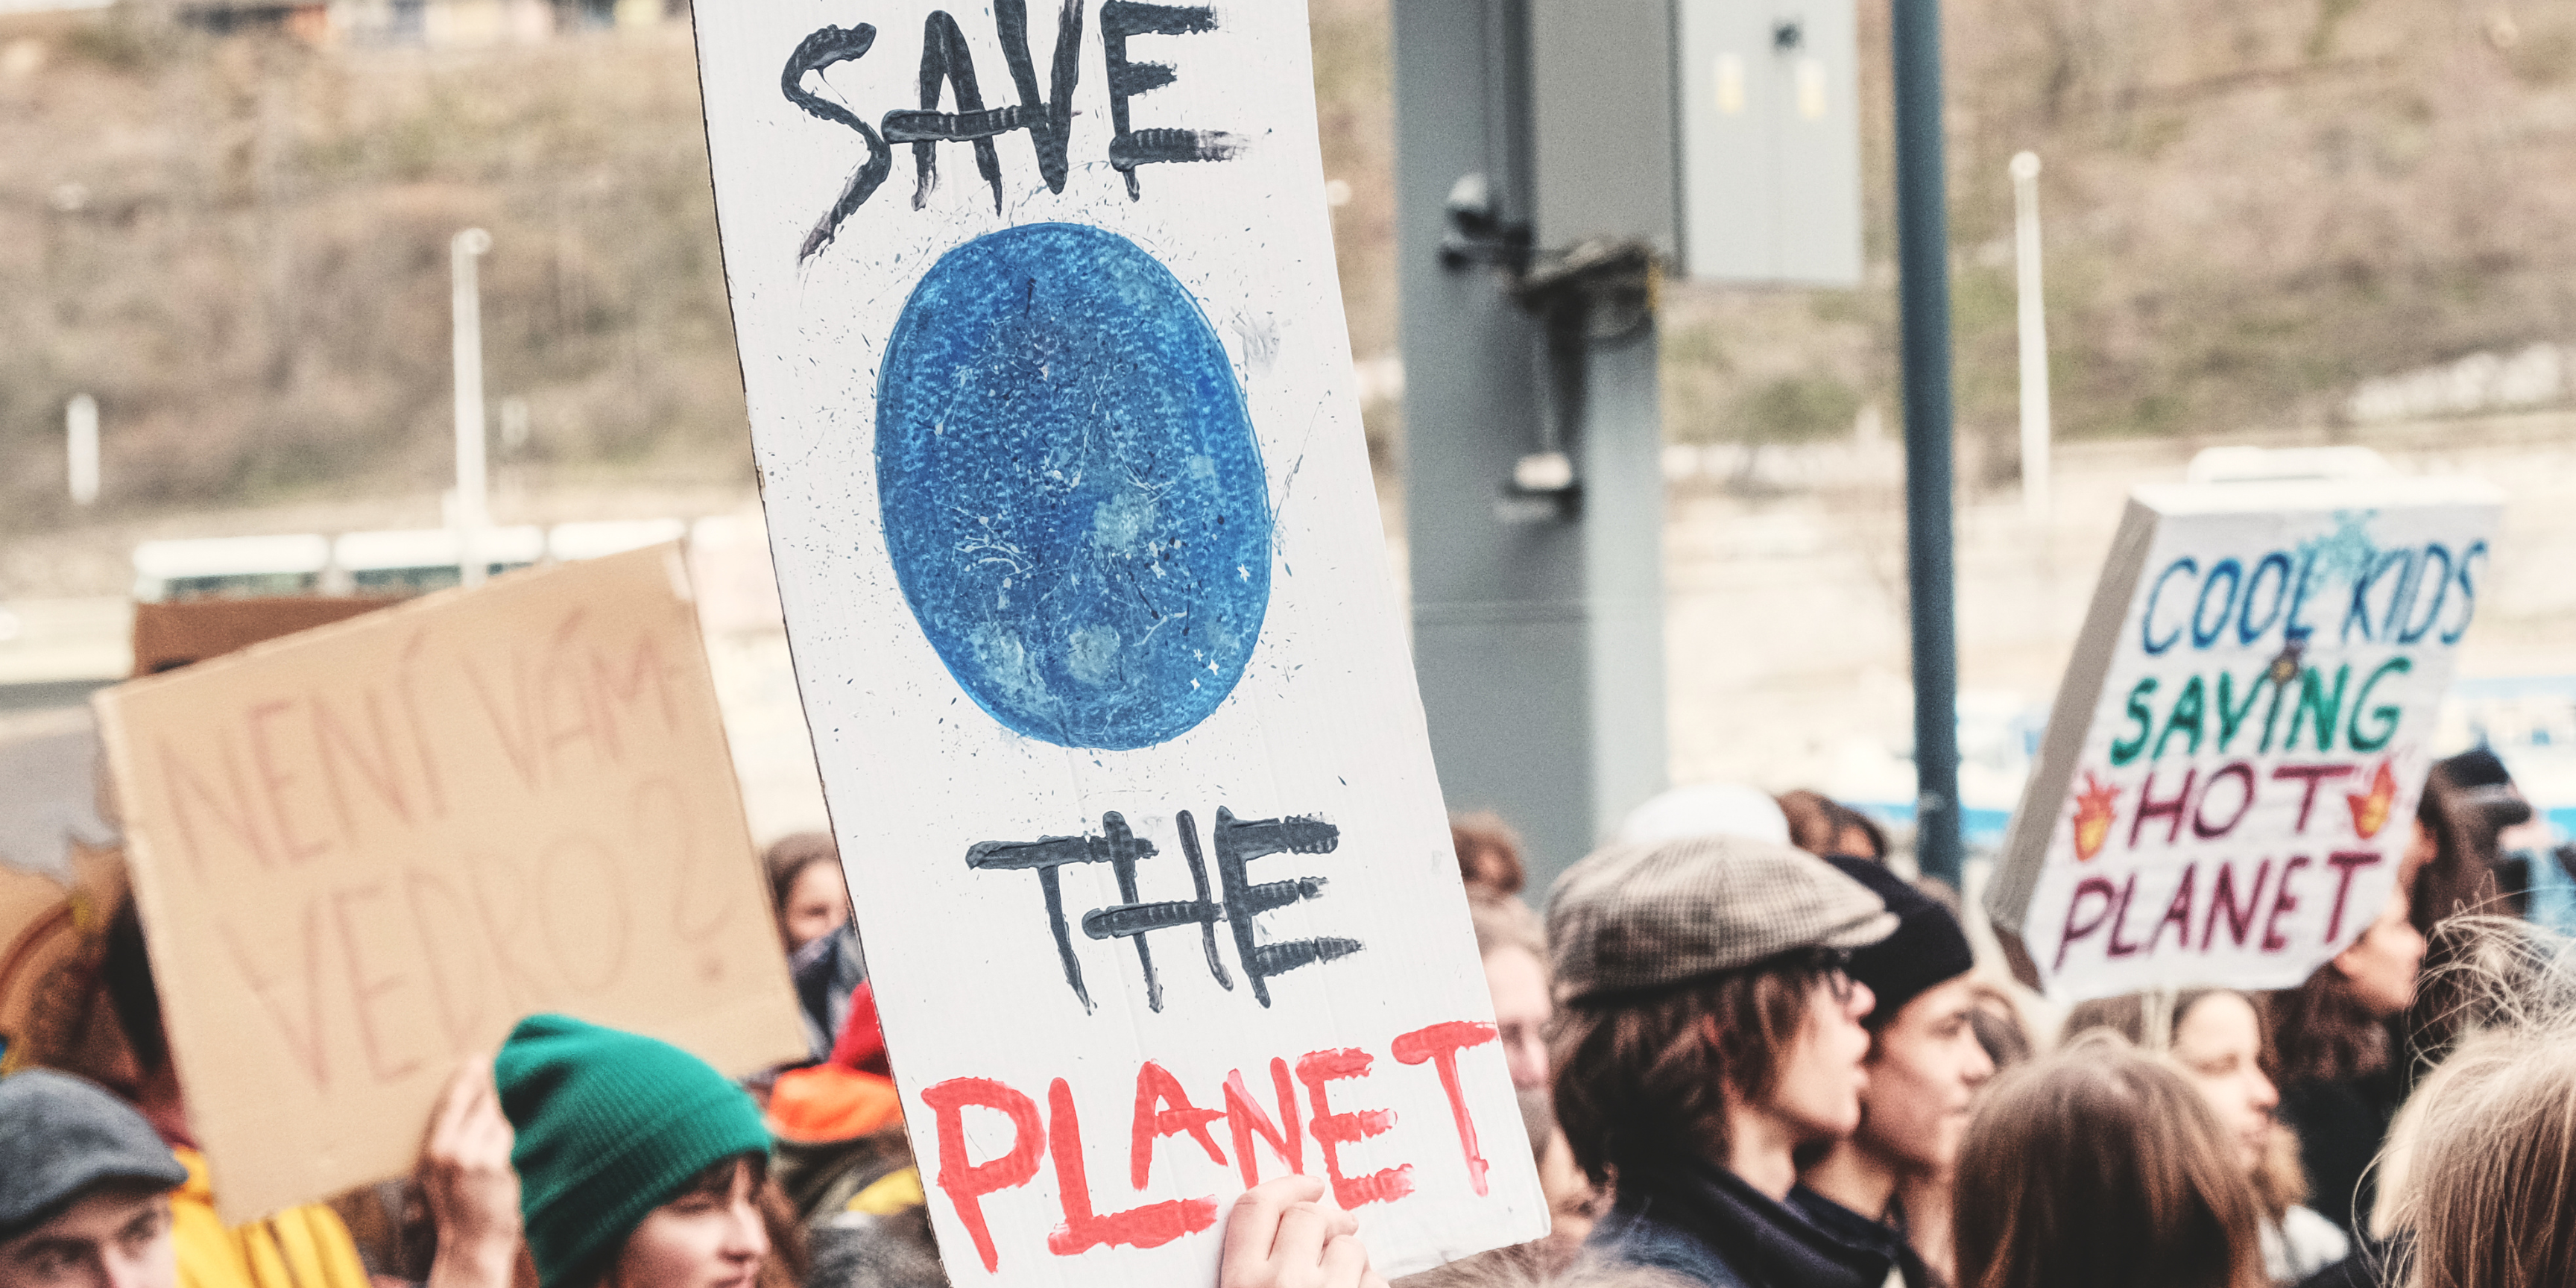 Bilder von Protestplakaten mit der Aufschrift Save the Planet symbolisieren bei diesem Beitrag das Thema Periode und Umwelt. Der ökologische Fußabdruck von Menstruationsprodukten und umweltfreundliche Alternativen.